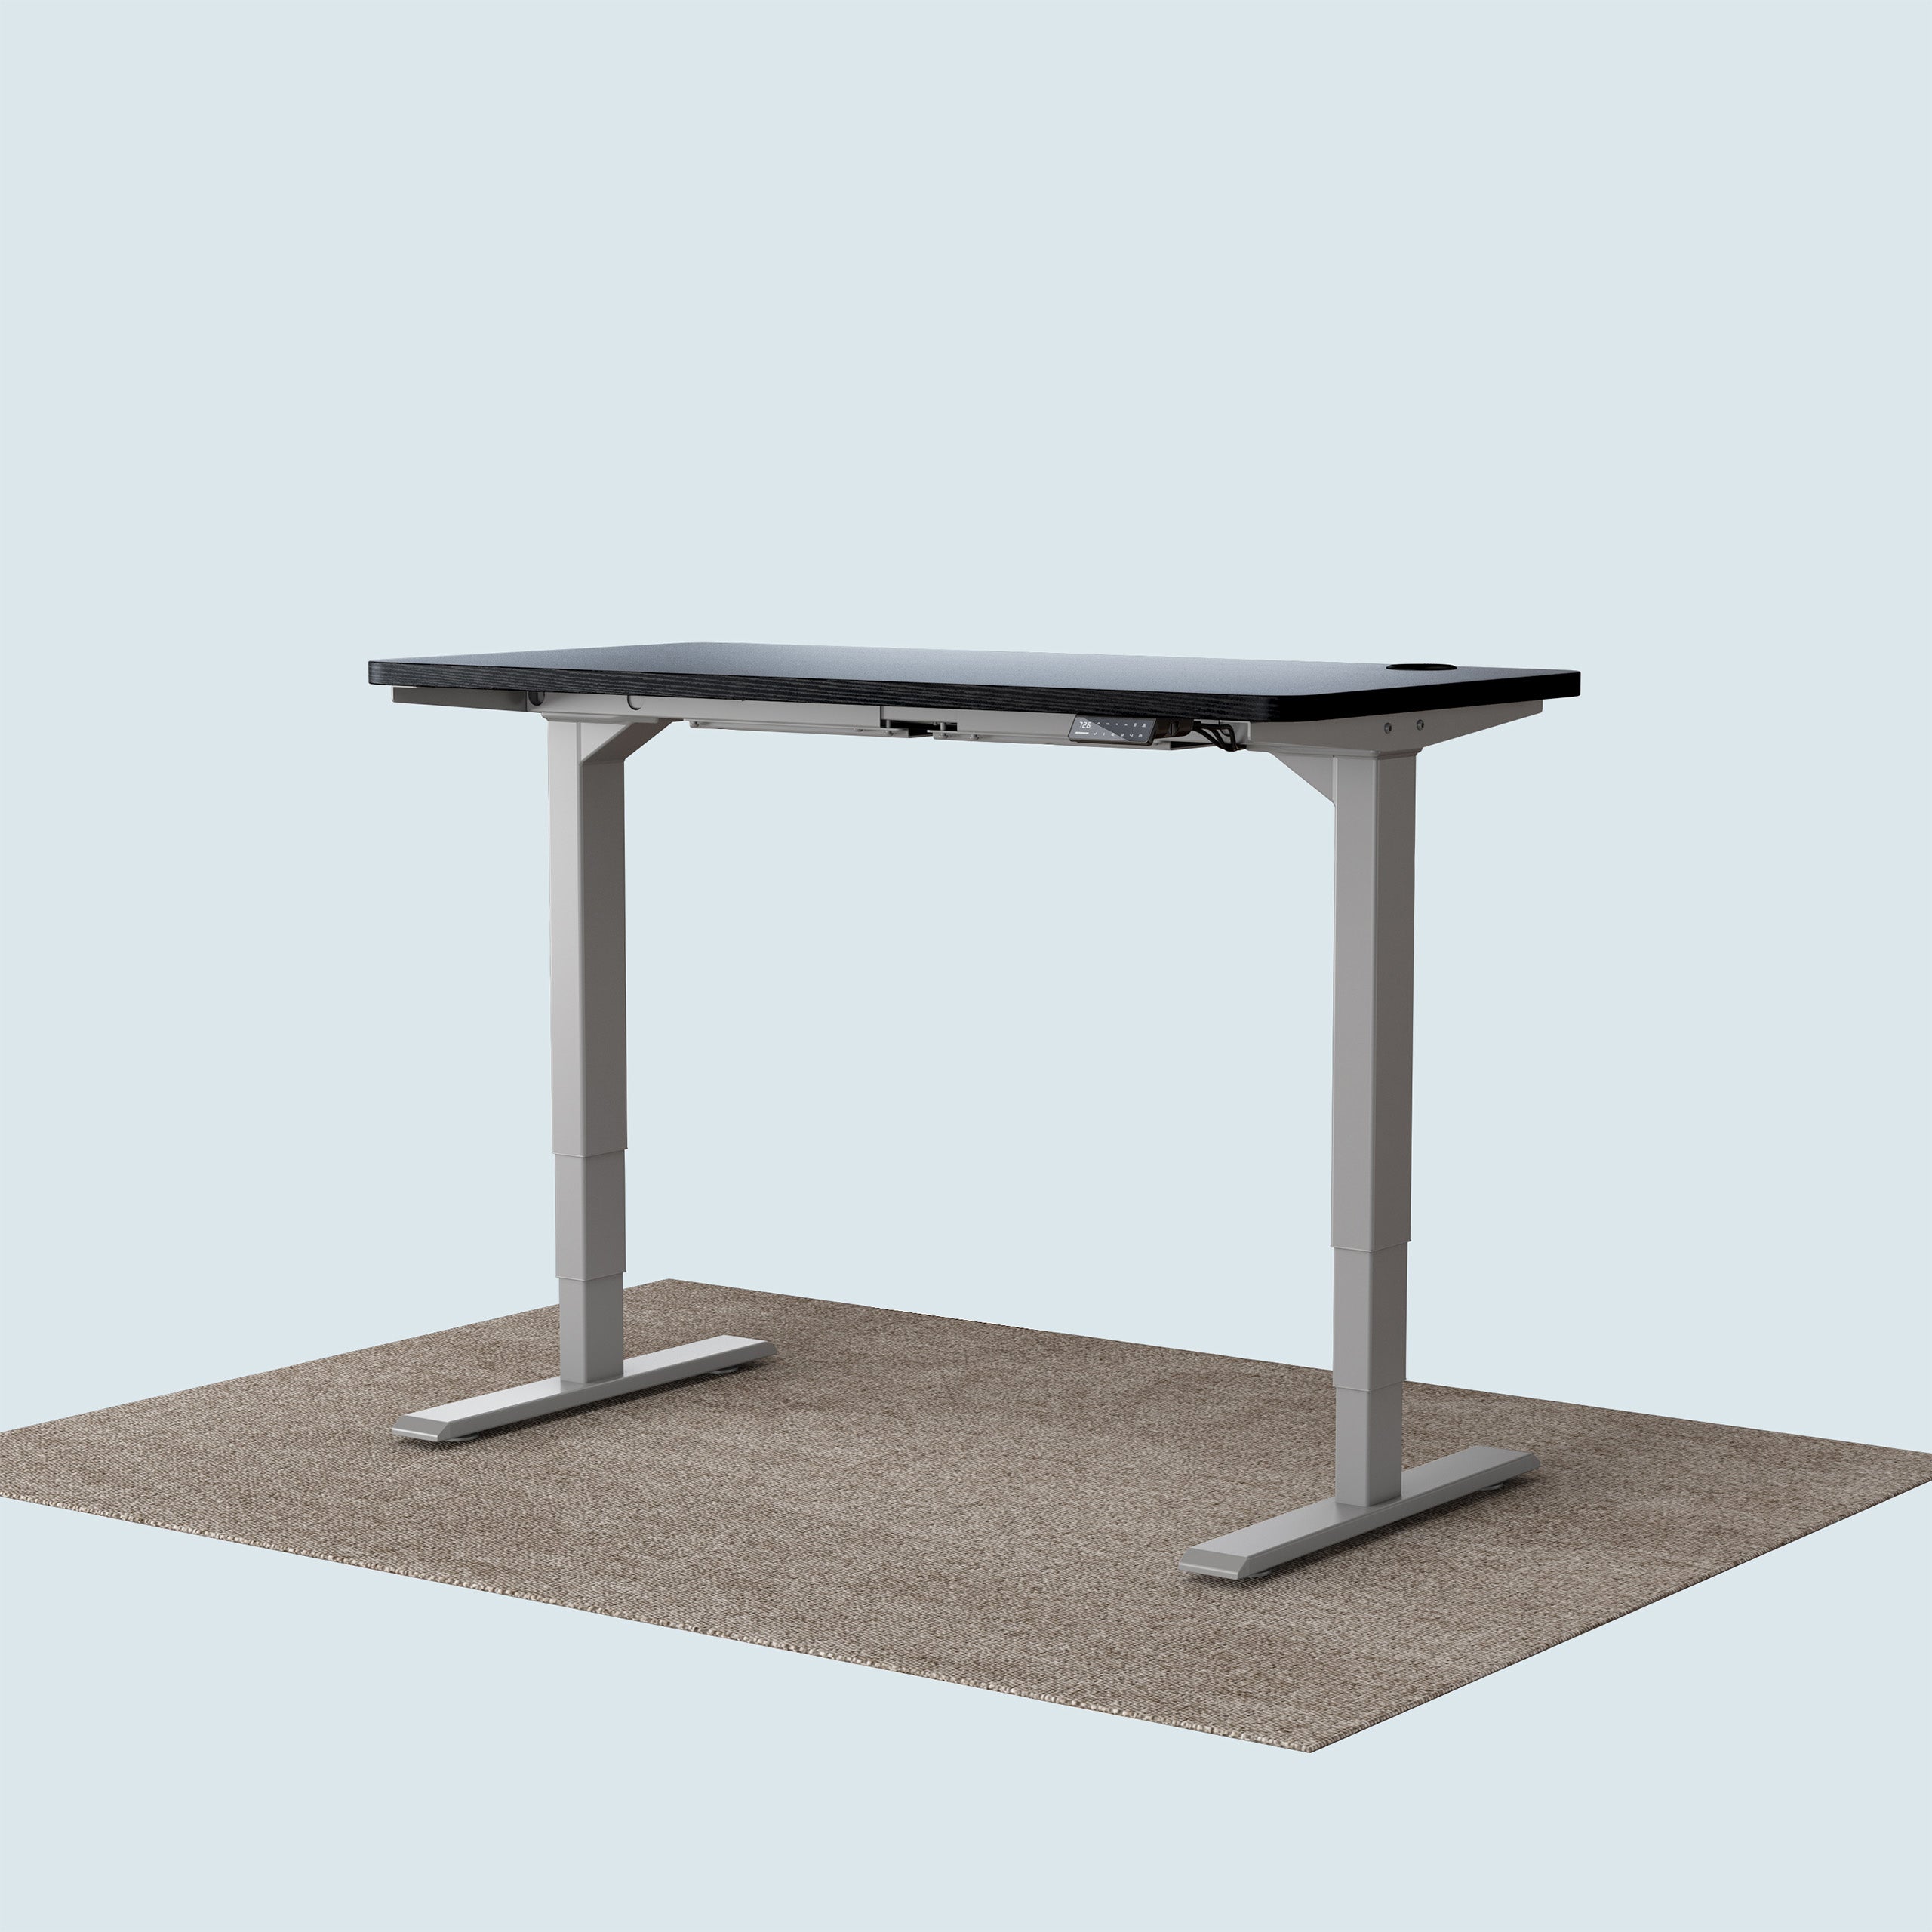 T2 Pro Plus height adjustable desk grey frame and 120x60cm black desktop